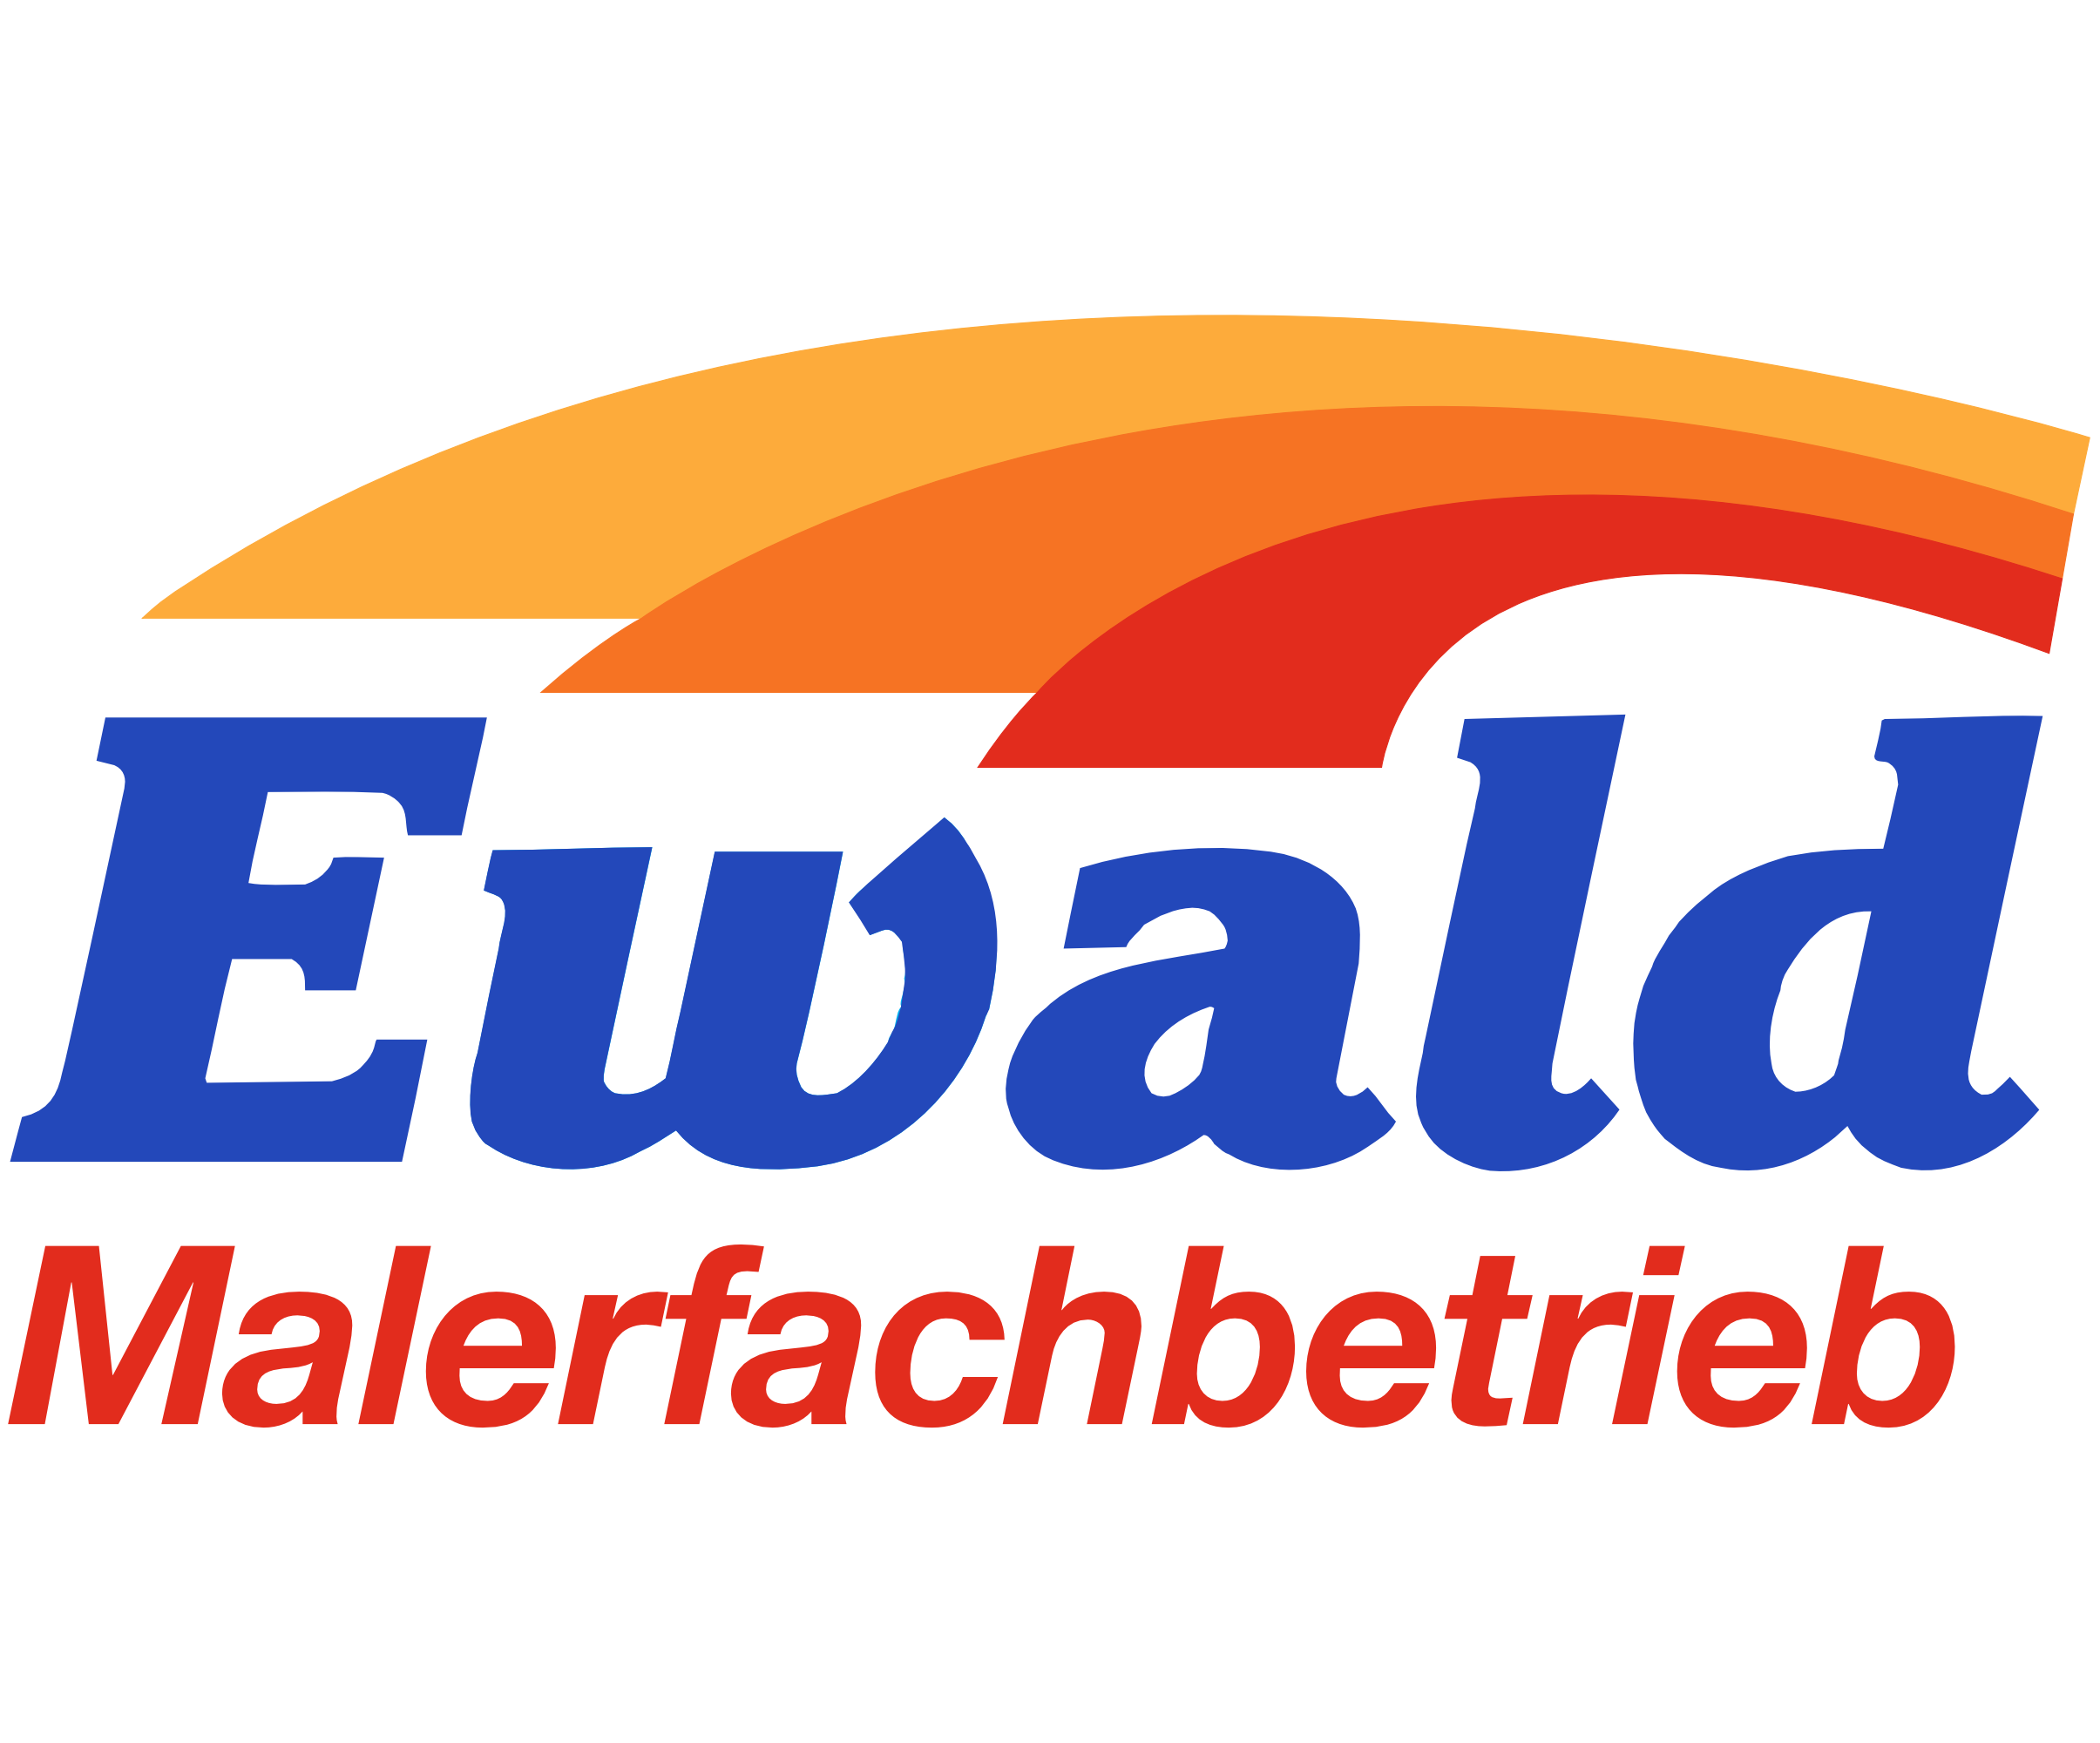 Ewald